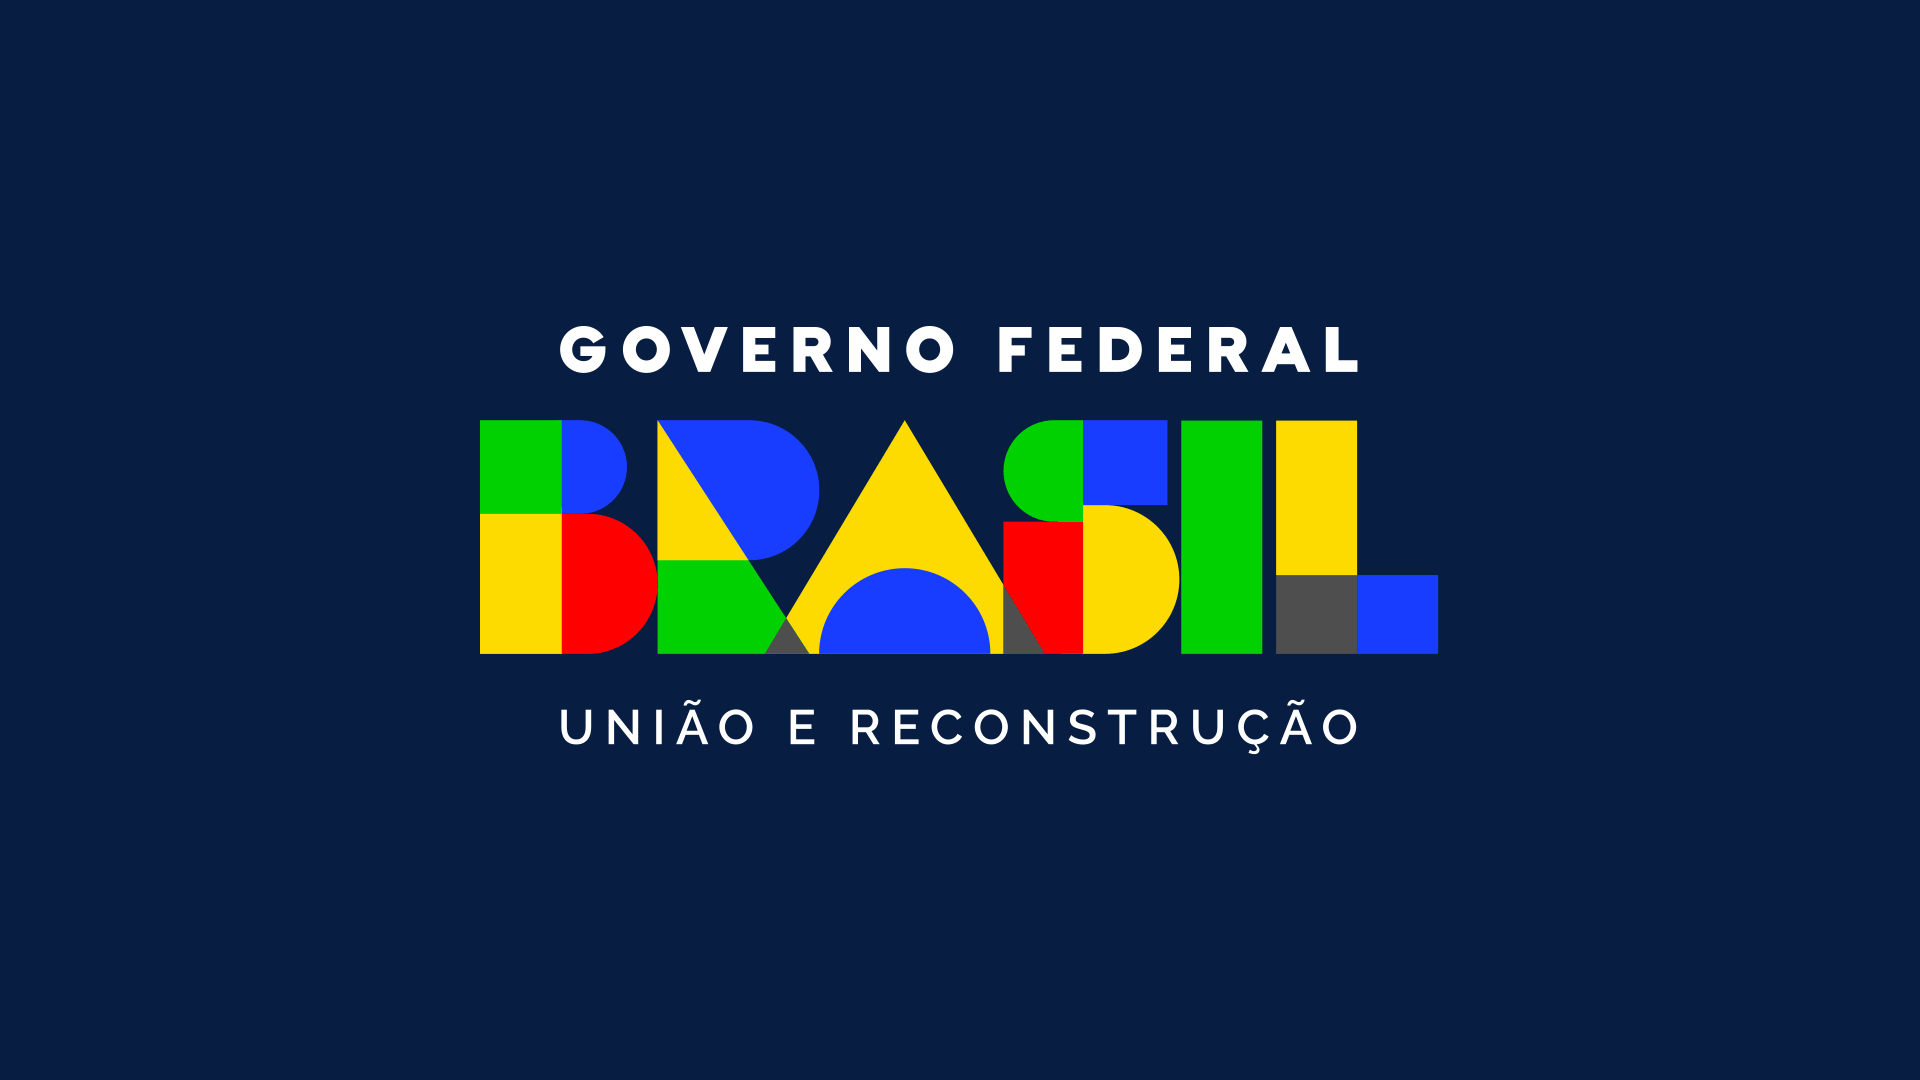 巴西政府新LOGO「团结与重建」